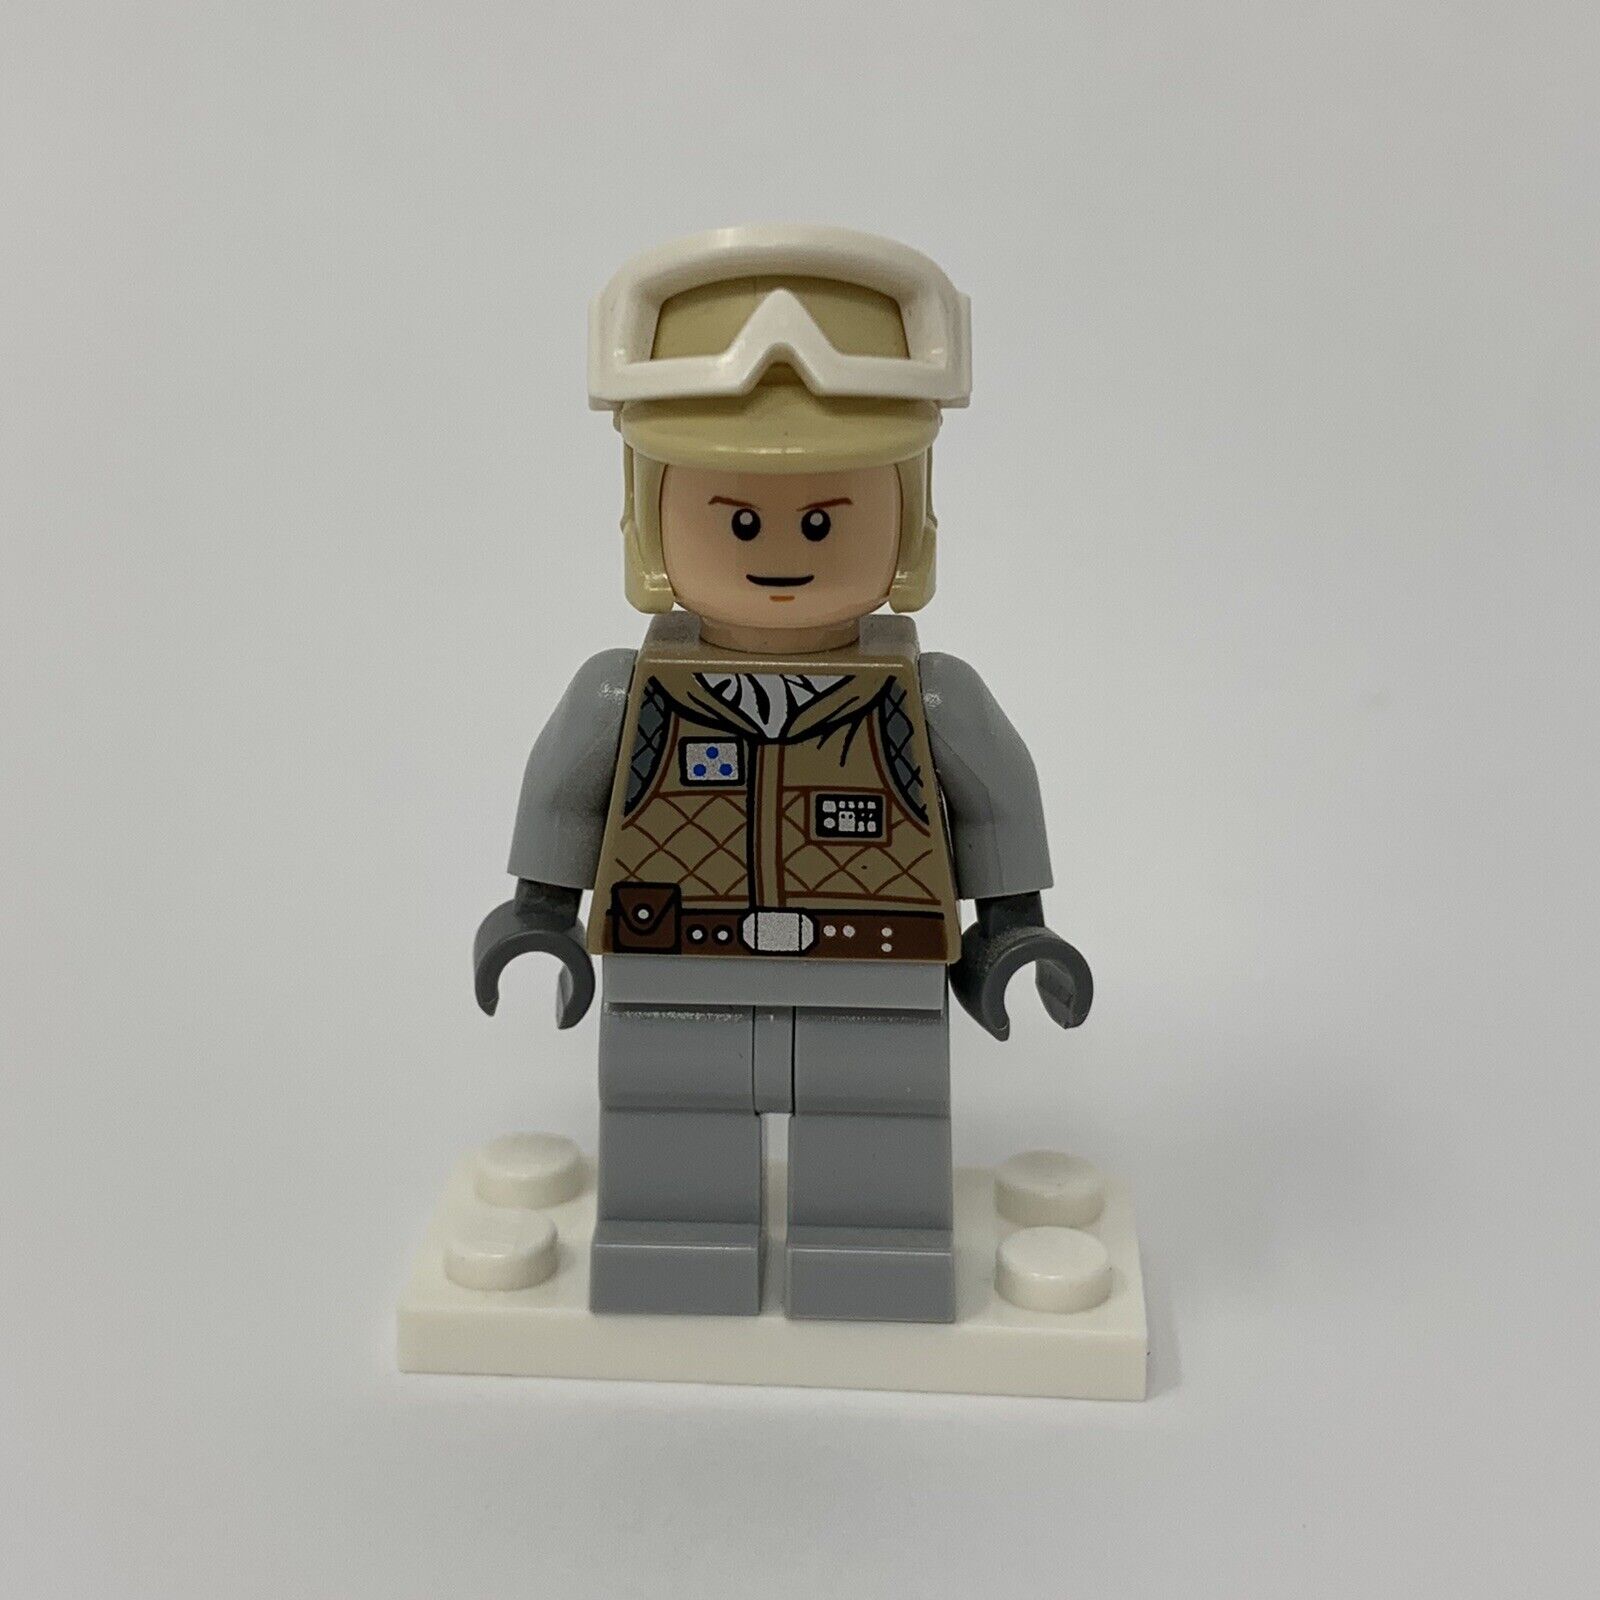 håndtering knoglebrud fravær Lego Luke Skywalker Hoth Minifigure 8089 sw0098 | eBay